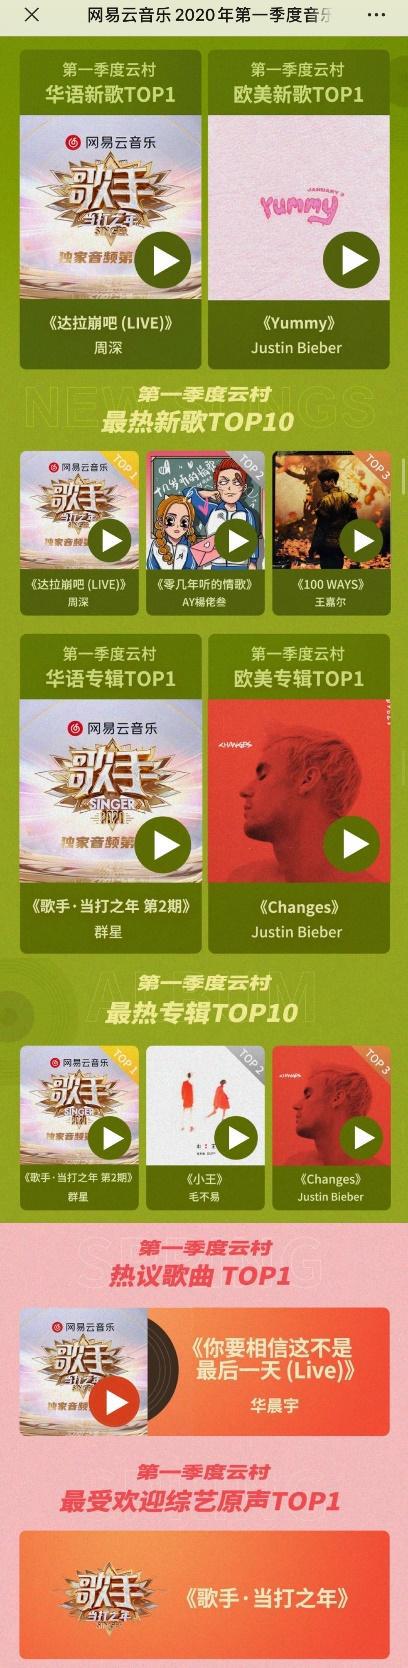 网易云音乐202米乐m60年Q1音乐榜单出炉《歌手》成最大赢家(图2)